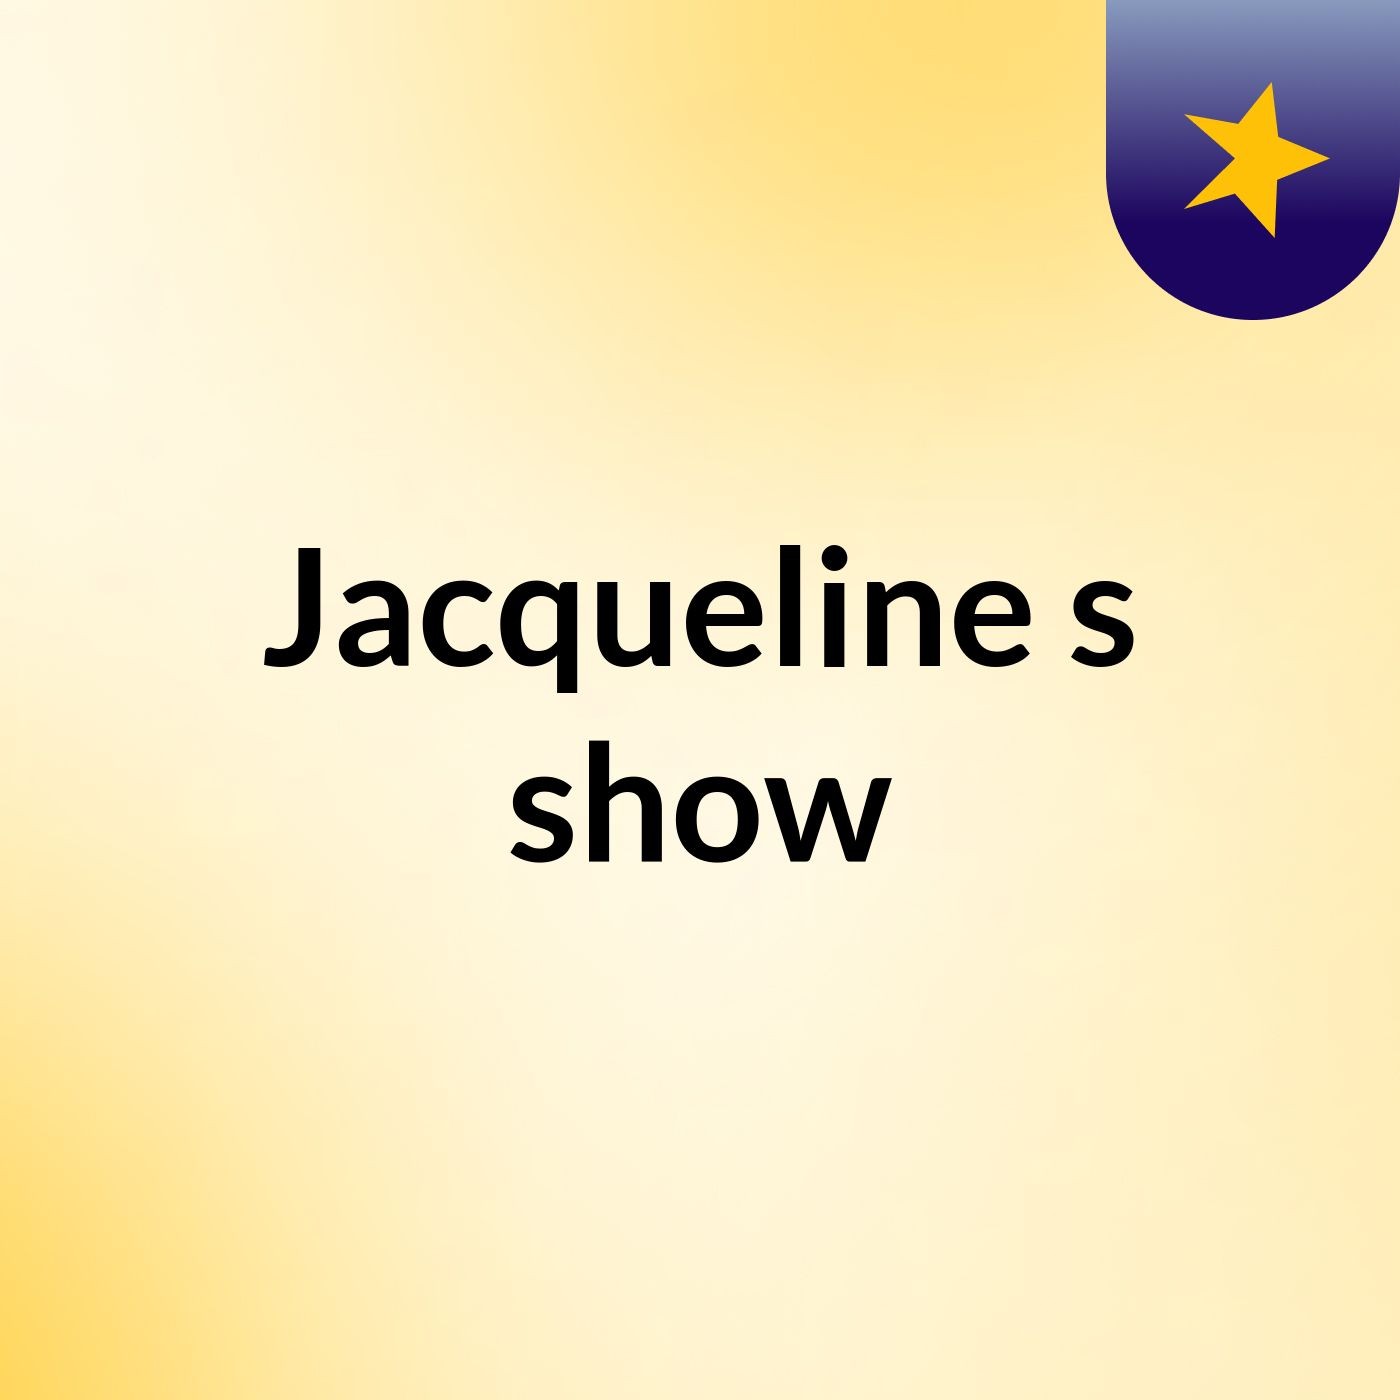 Jacqueline's show